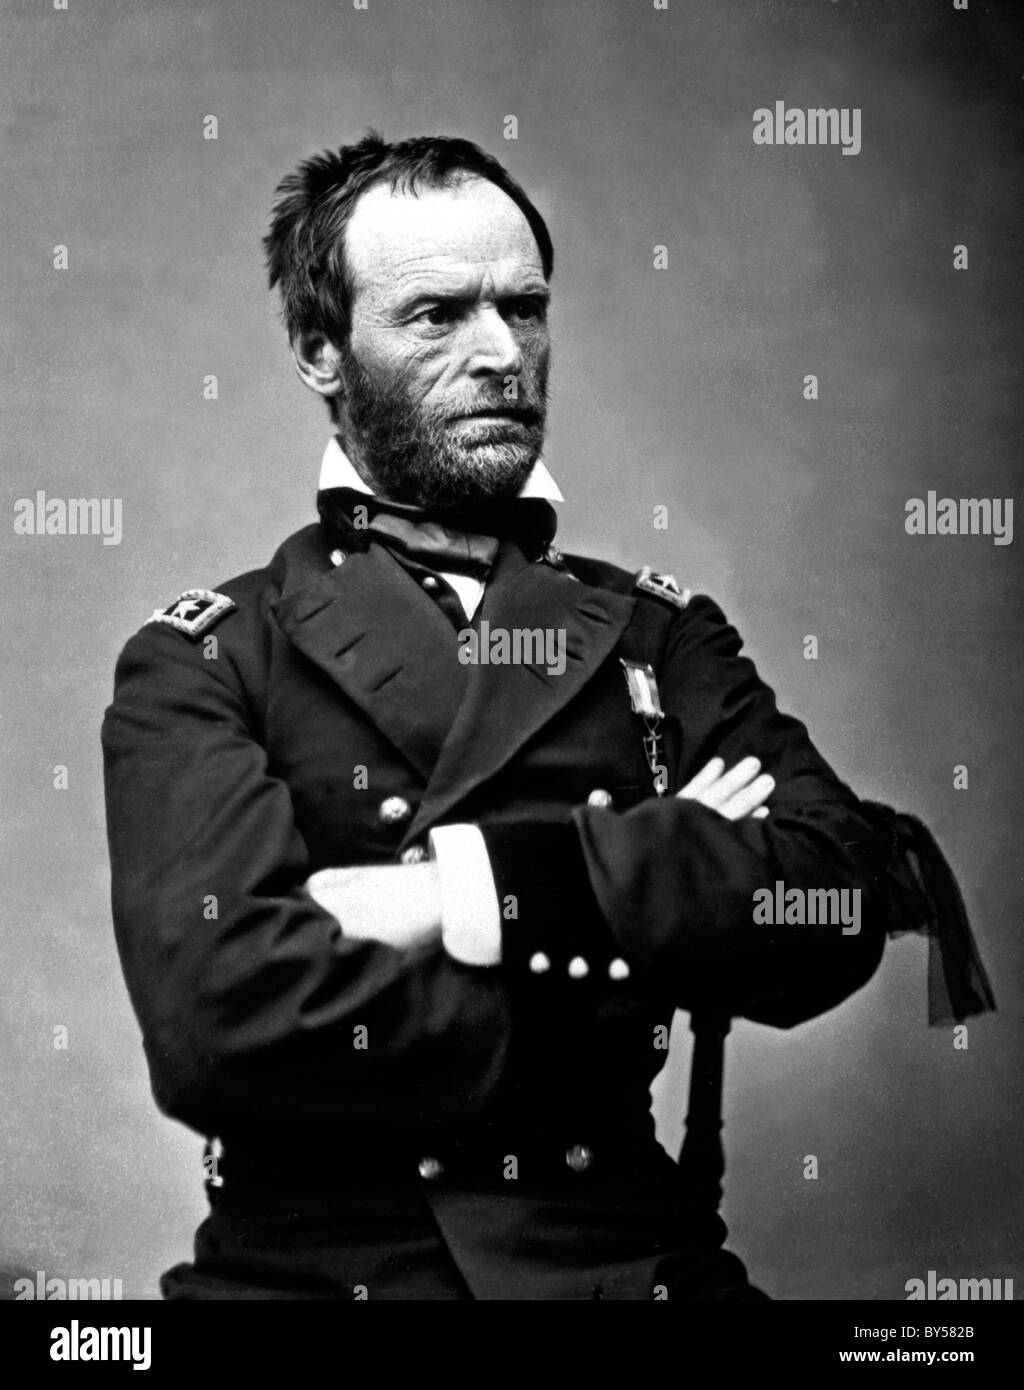 WILLIAM SHERMAN (1820-1891) comandante del ejército de la Unión en la Guerra Civil Americana aquí como Mayor General, mayo de 1865. Véase la descripción a continuación. Foto de stock